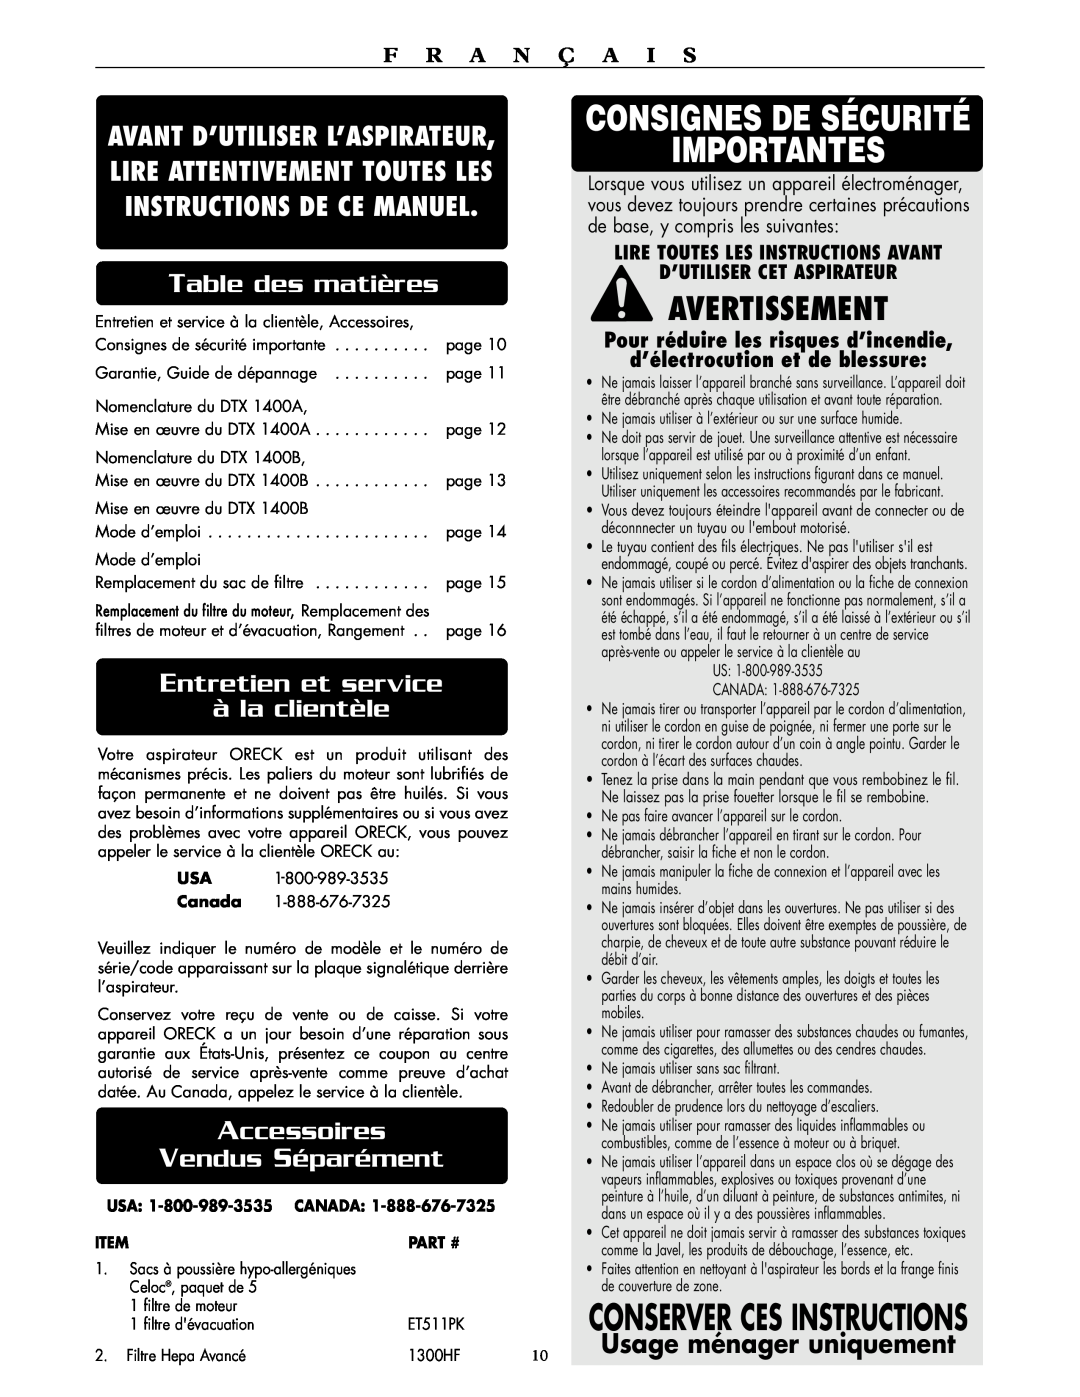 Oreck DTX 1400B Consignes De Sécurité Importantes, Avertissement, Conserver Ces Instructions, Table des matières 